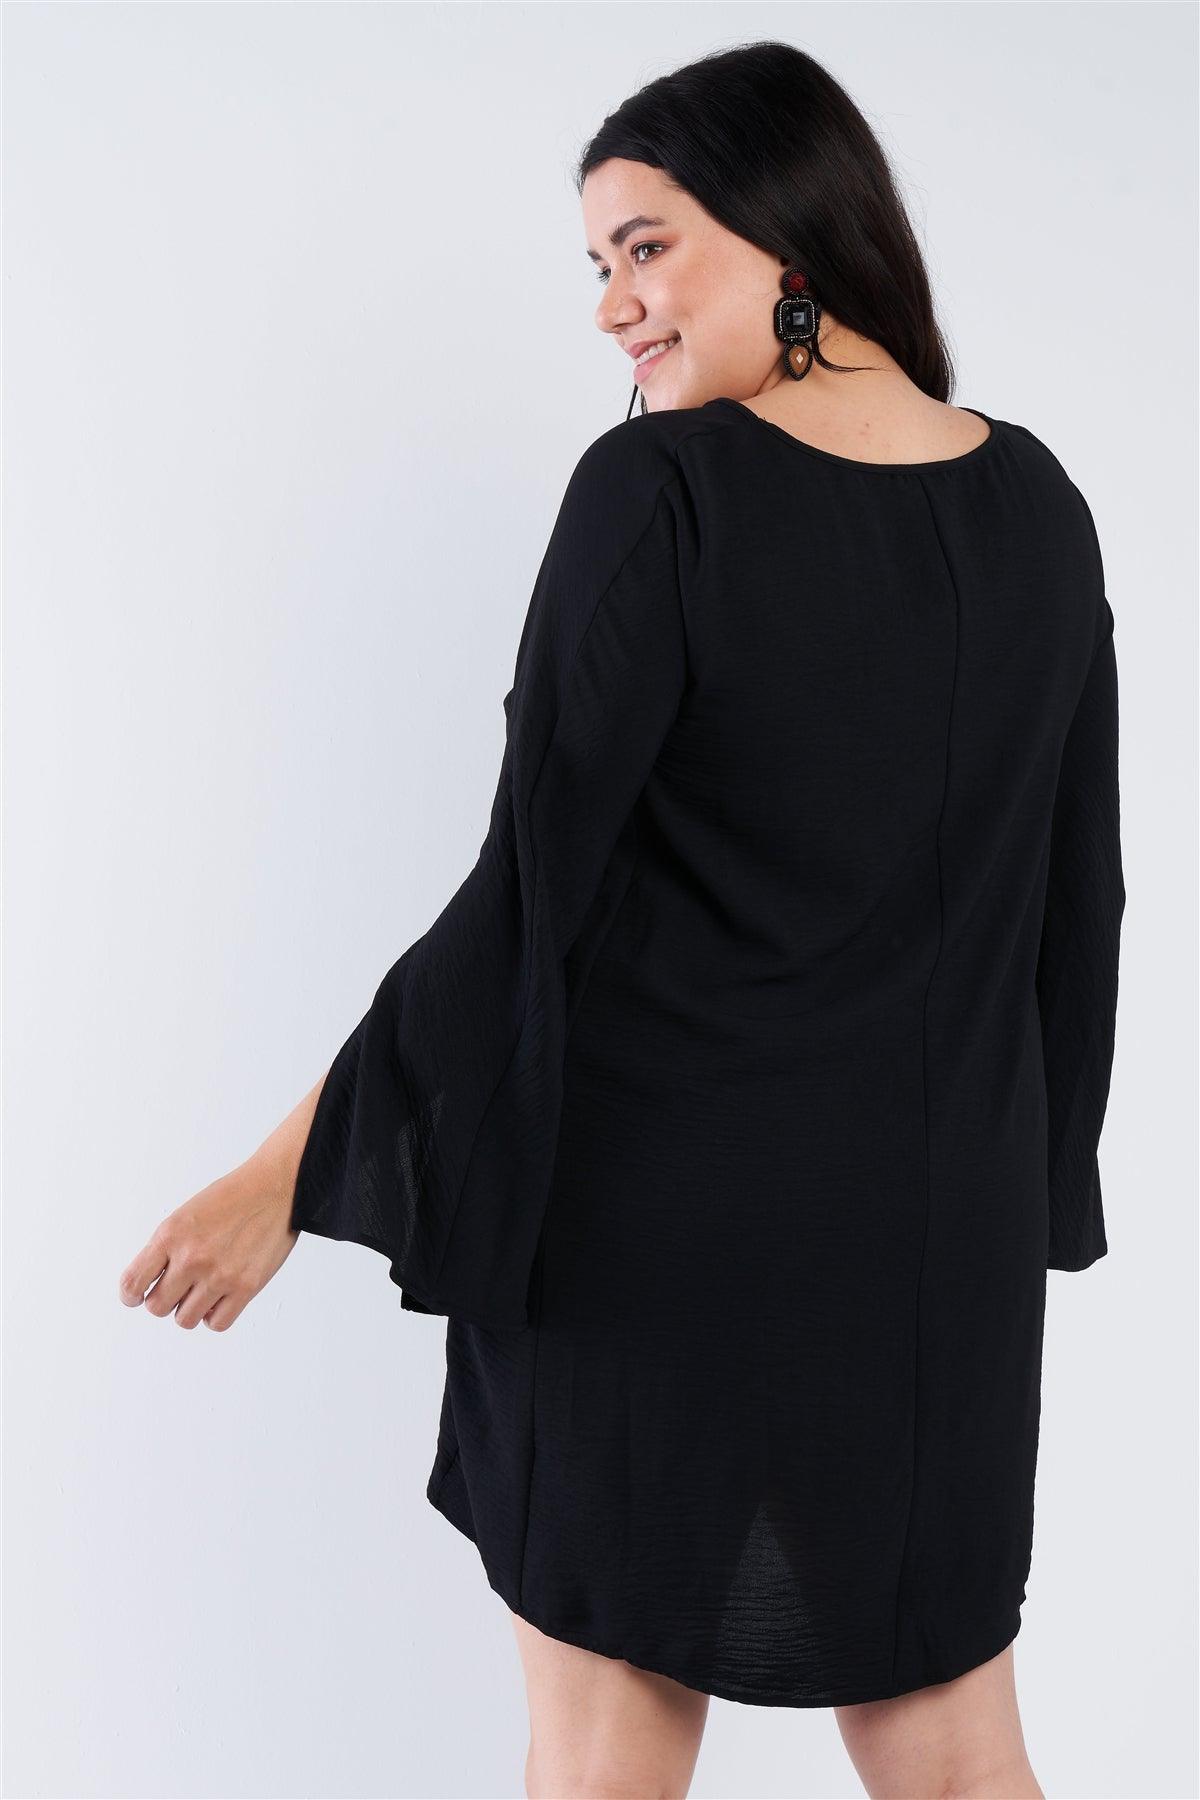 Plus Size Black Retro Chic Full Slit Sleeve Mini Dress   /2-3-2